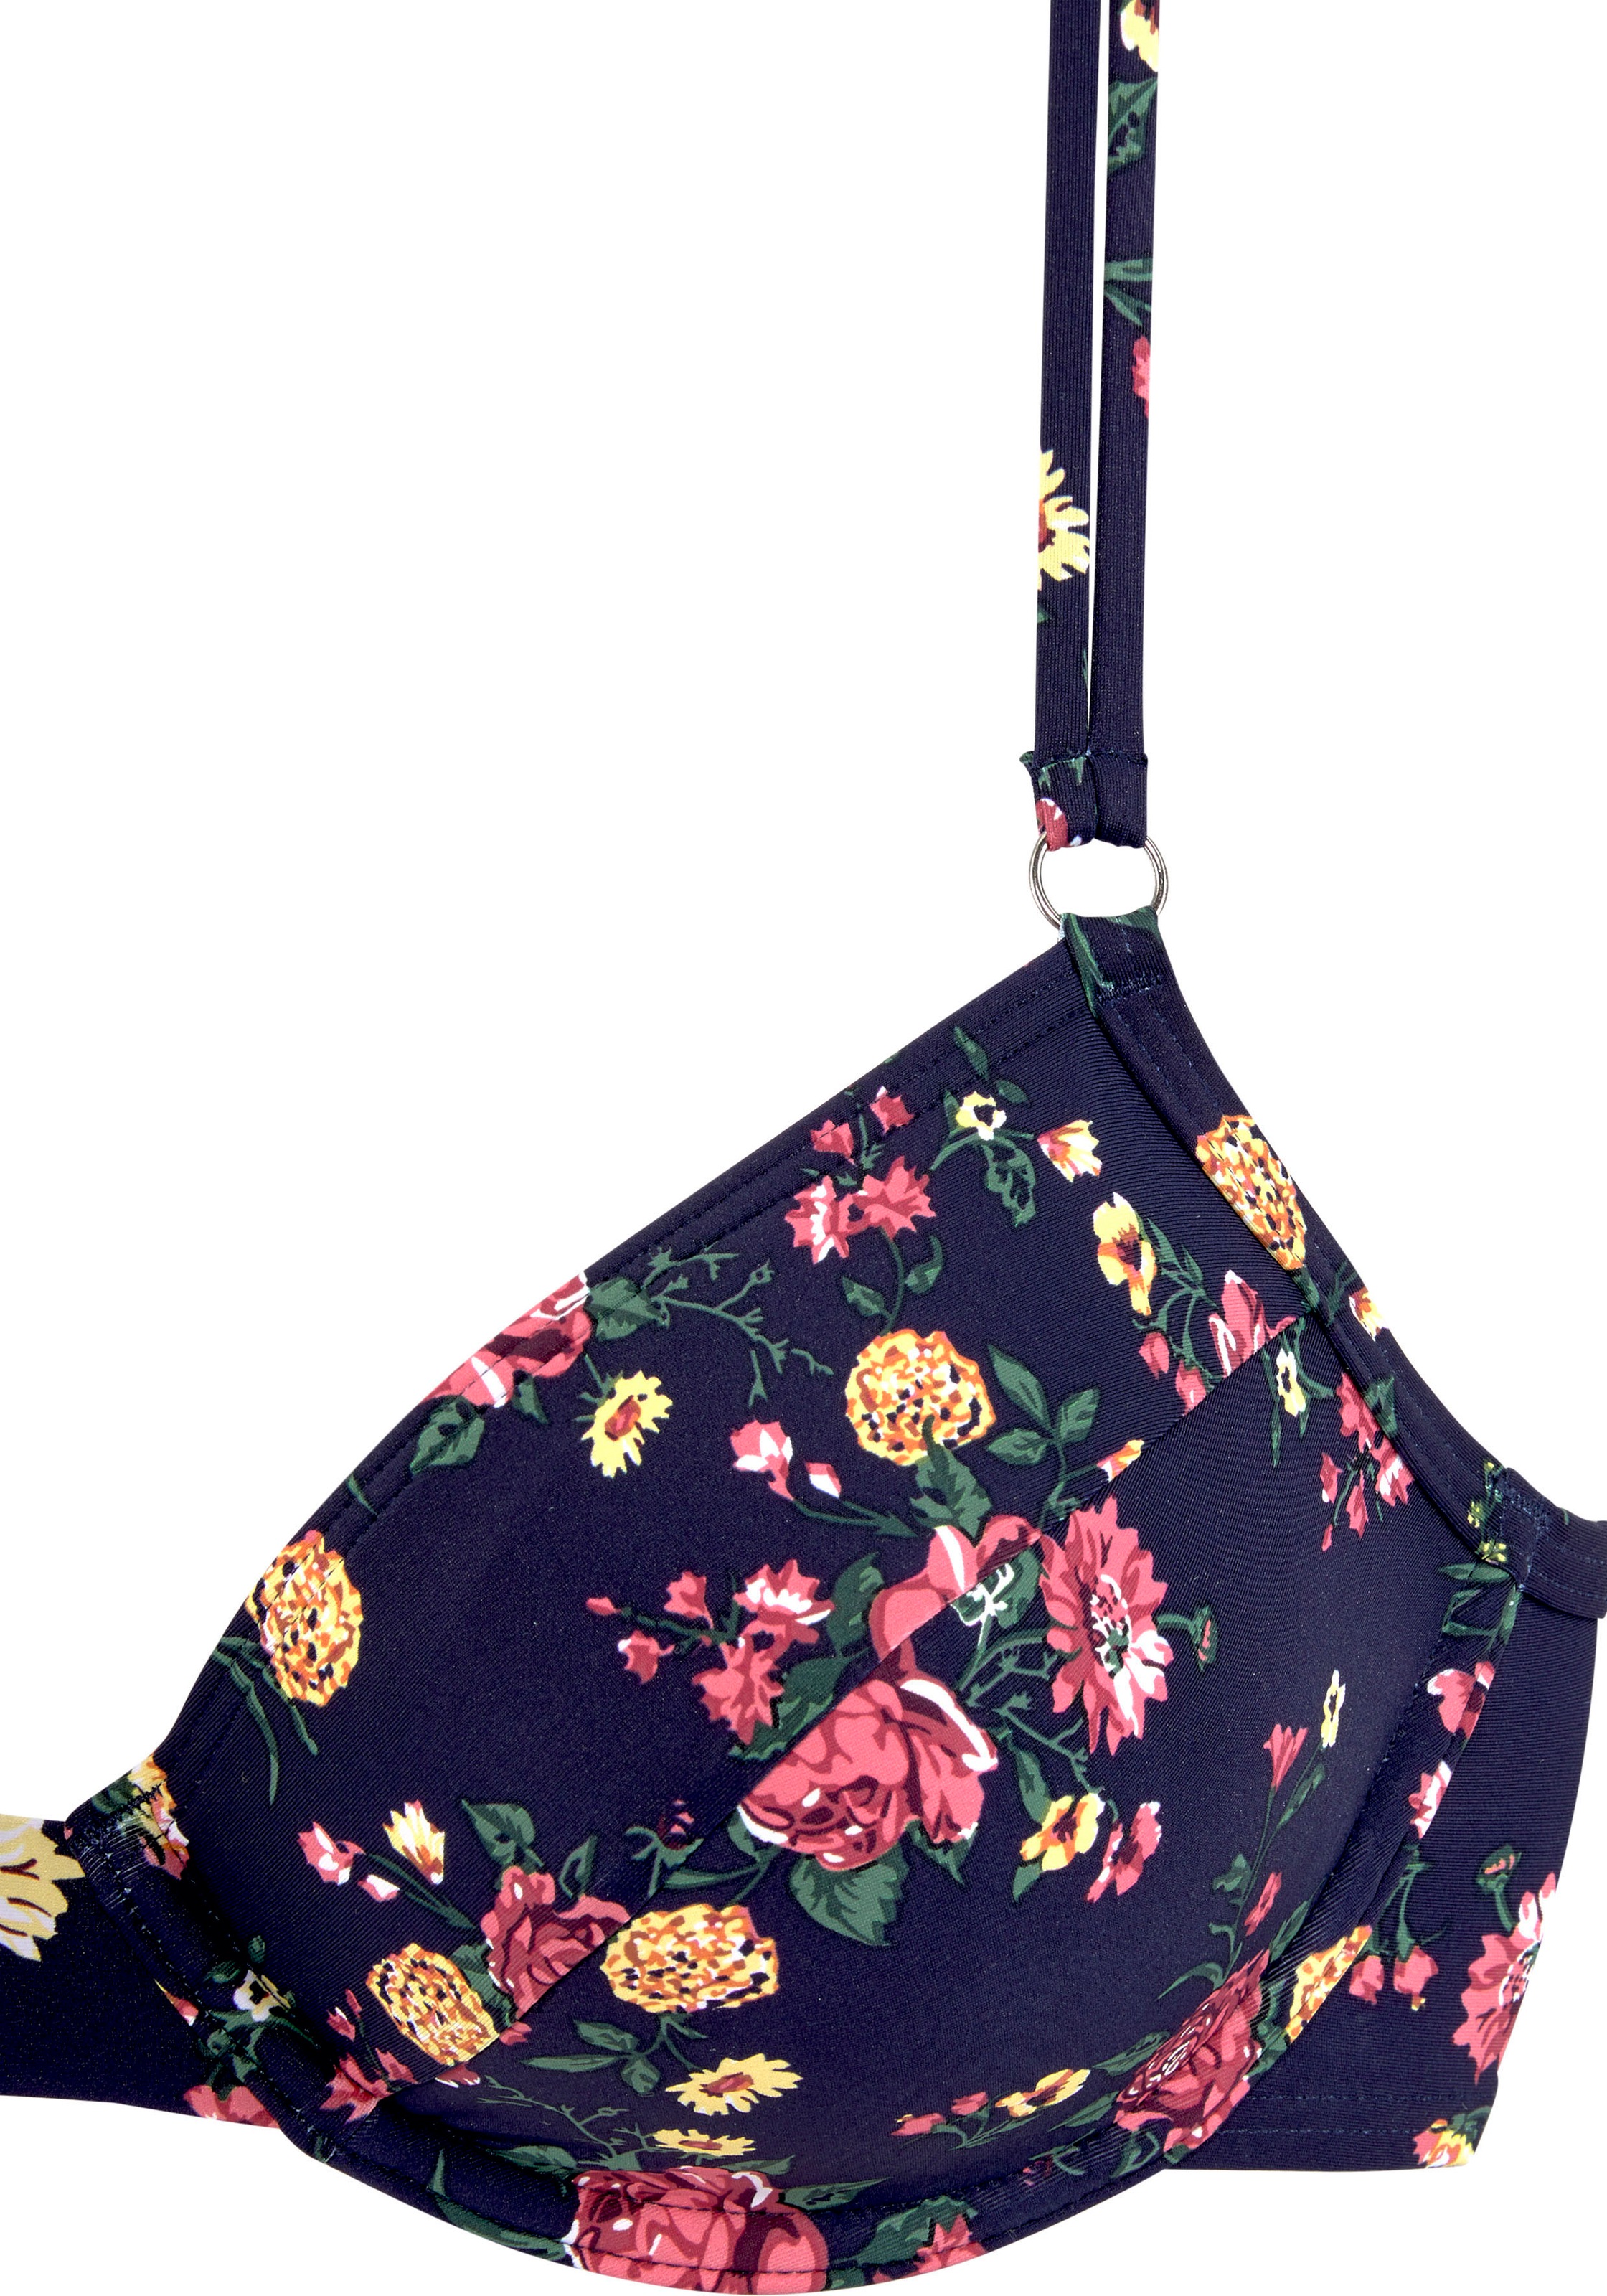 LASCANA Bügel-Bikini, mit romantischem Blumendesign » LASCANA | Bademode,  Unterwäsche & Lingerie online kaufen | Bügel-Bikinis